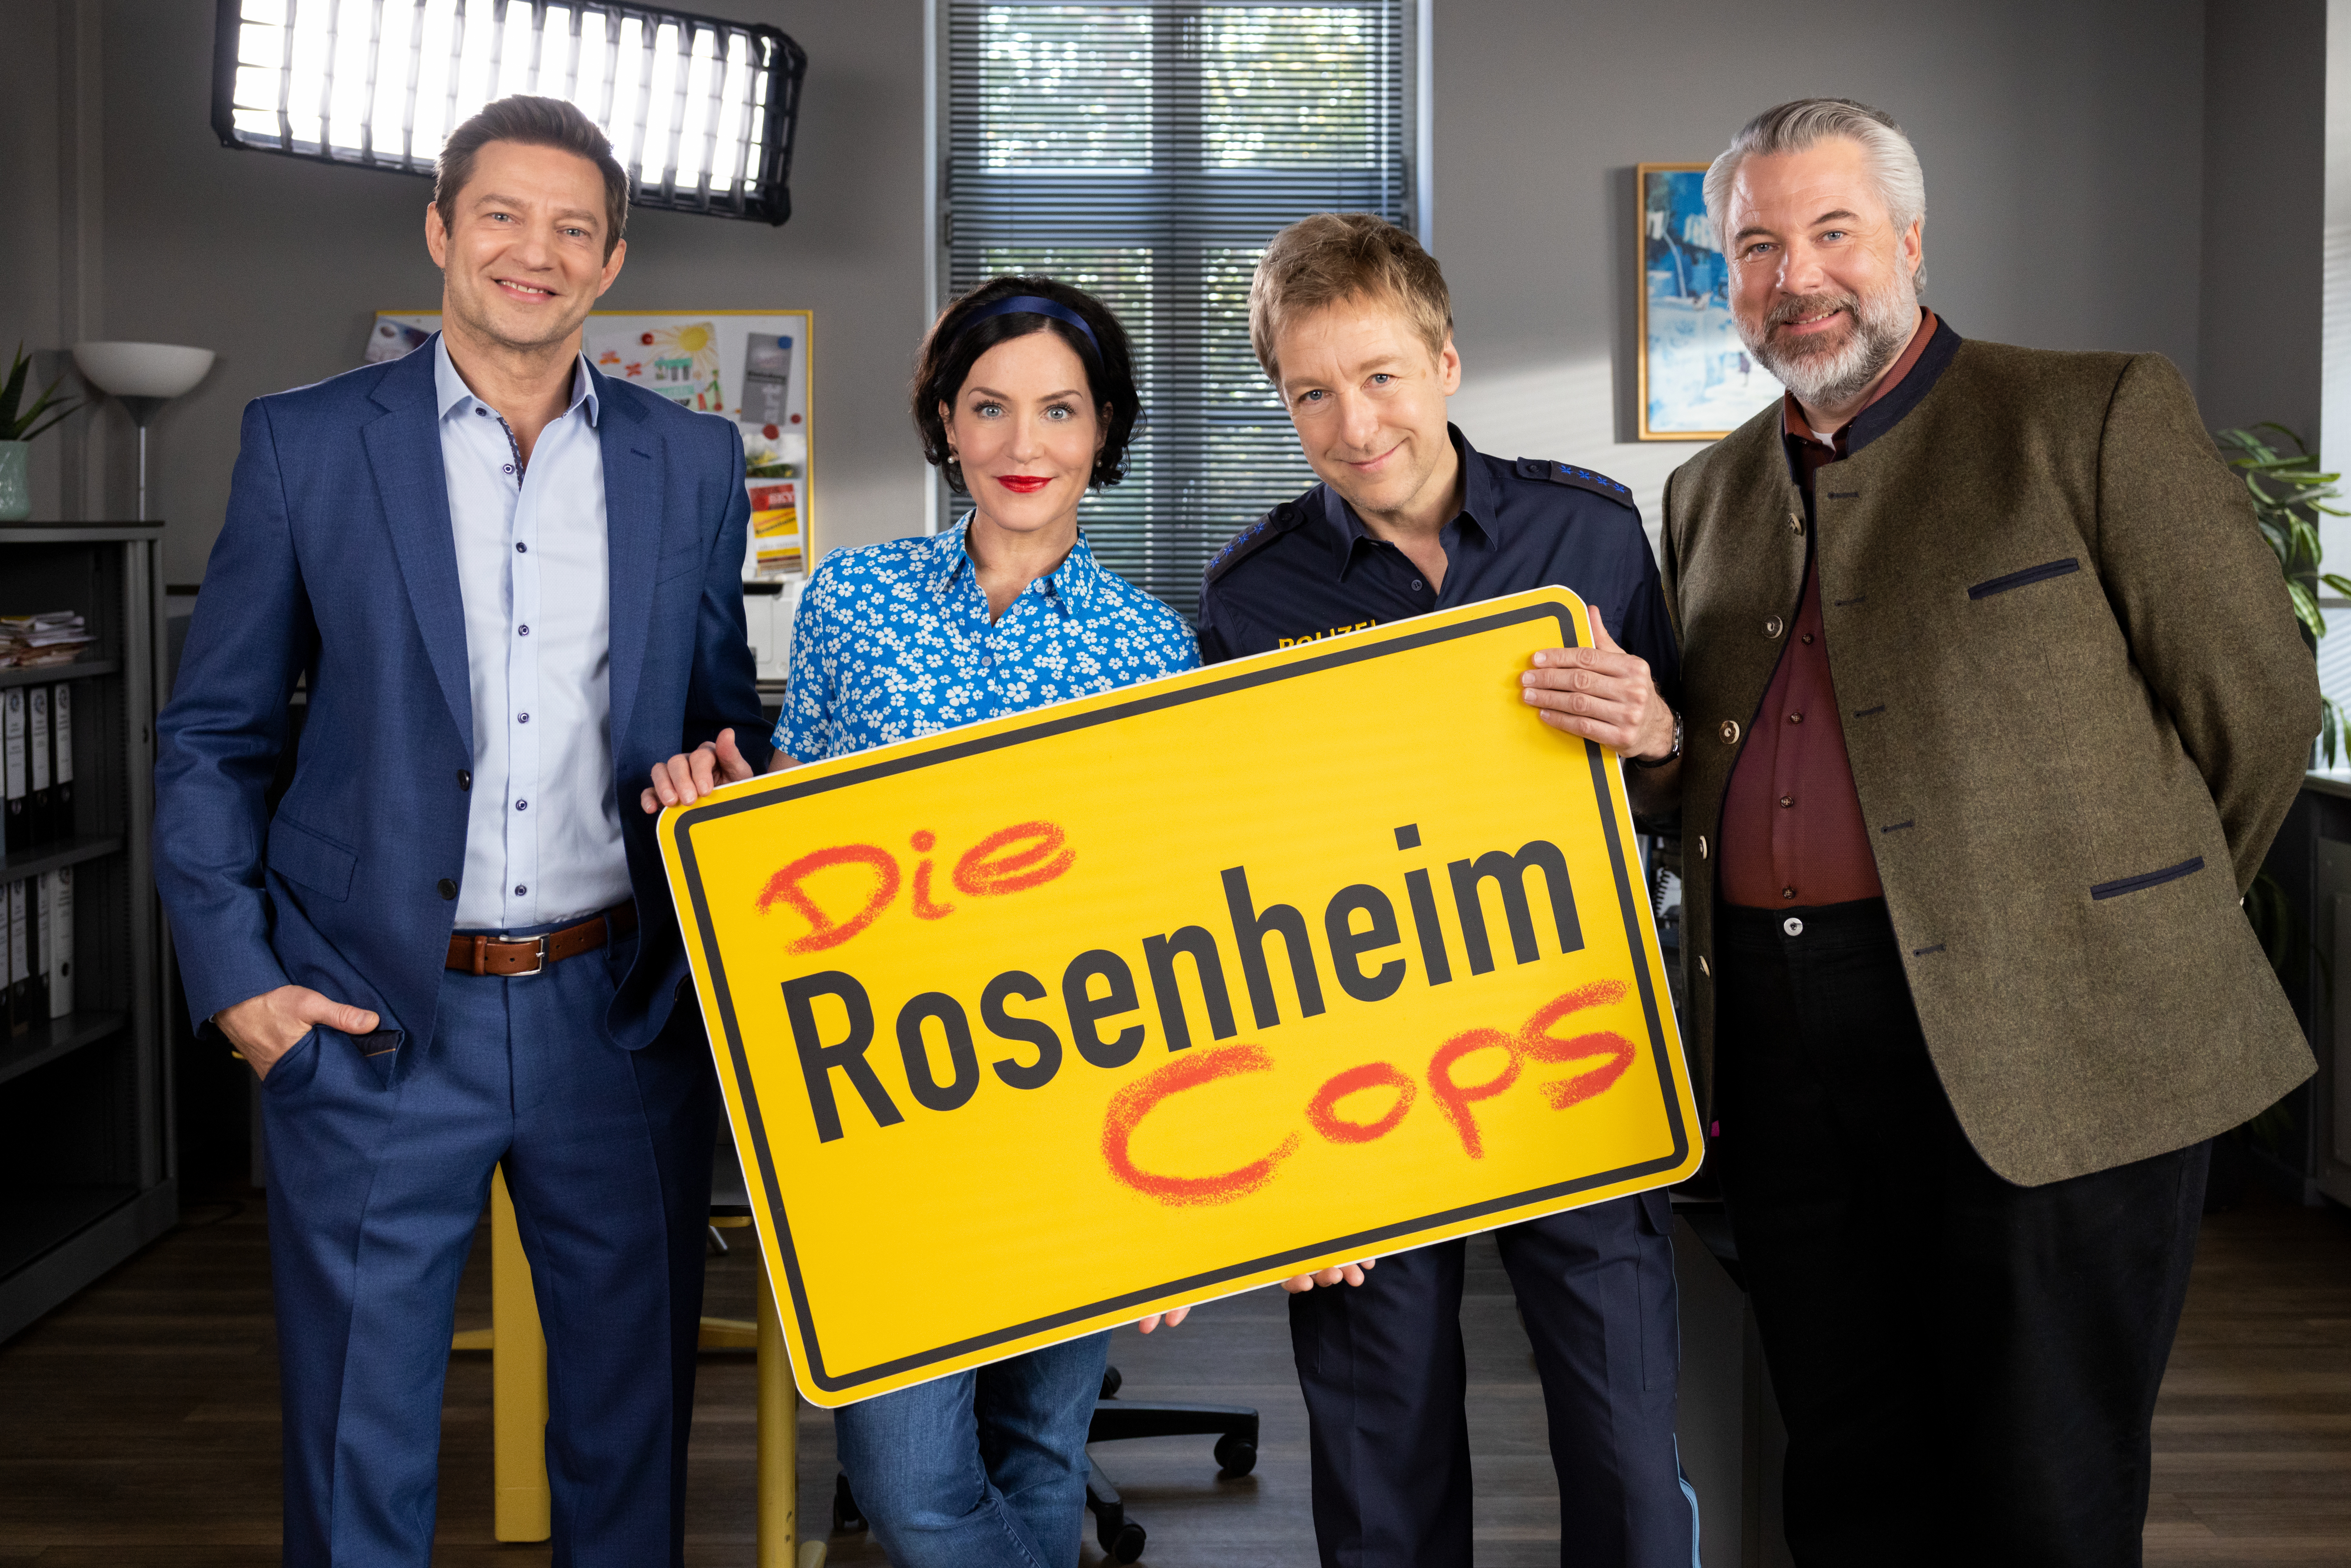 #„Die Rosenheim-Cops“ Staffel 22: Die neuen Folgen sind endlich verfügbar